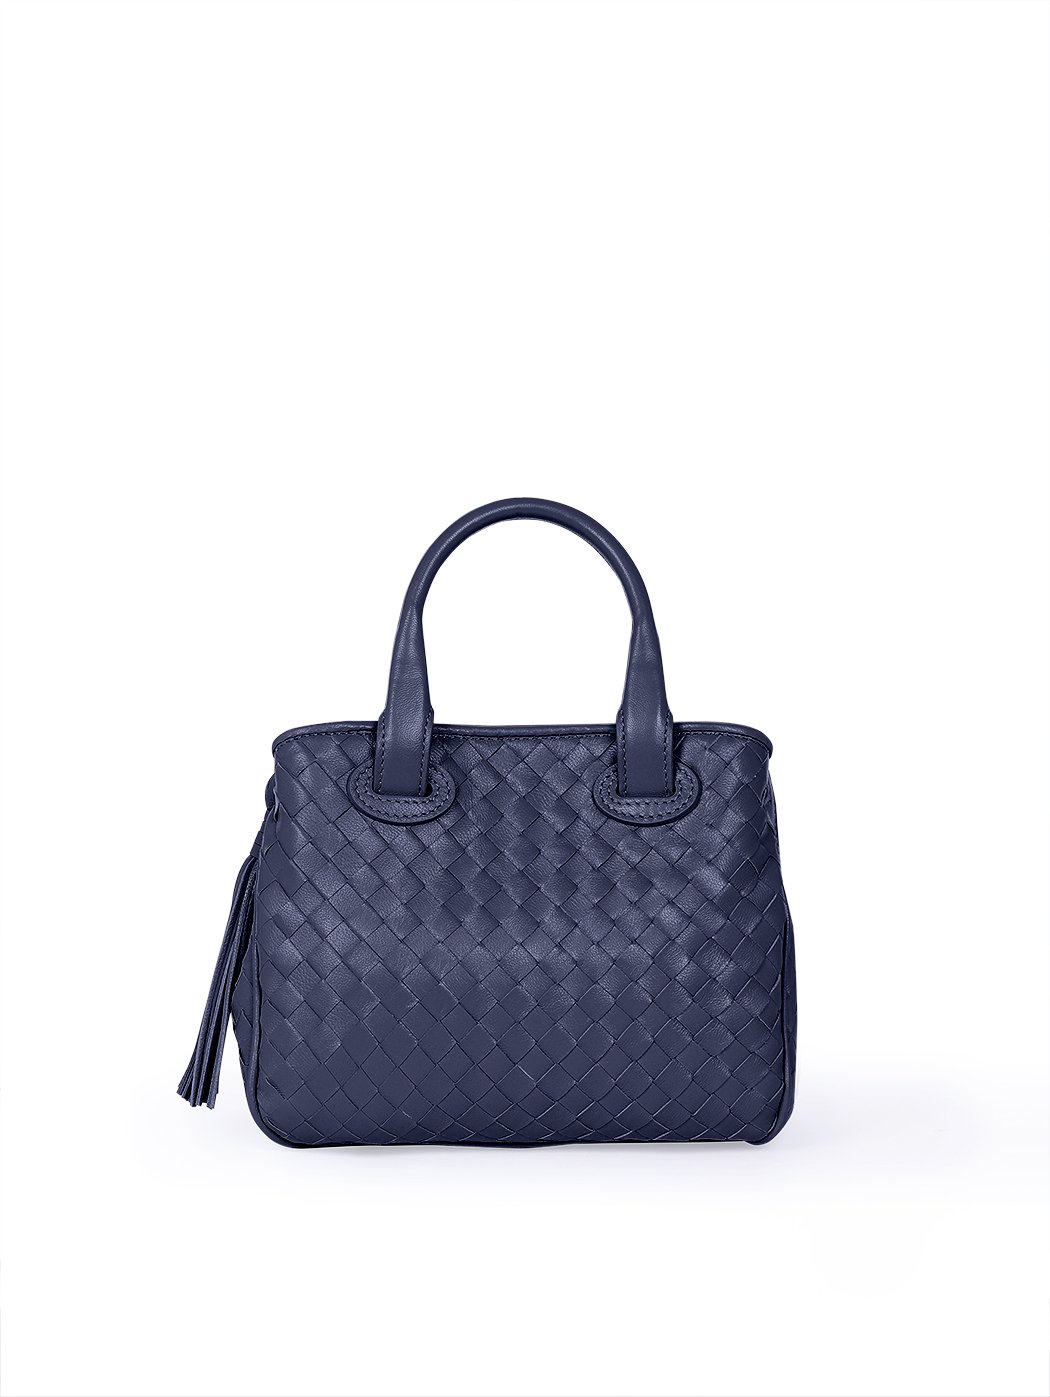 Женская плетеная сумочка коллекции Intrecci синего цвета